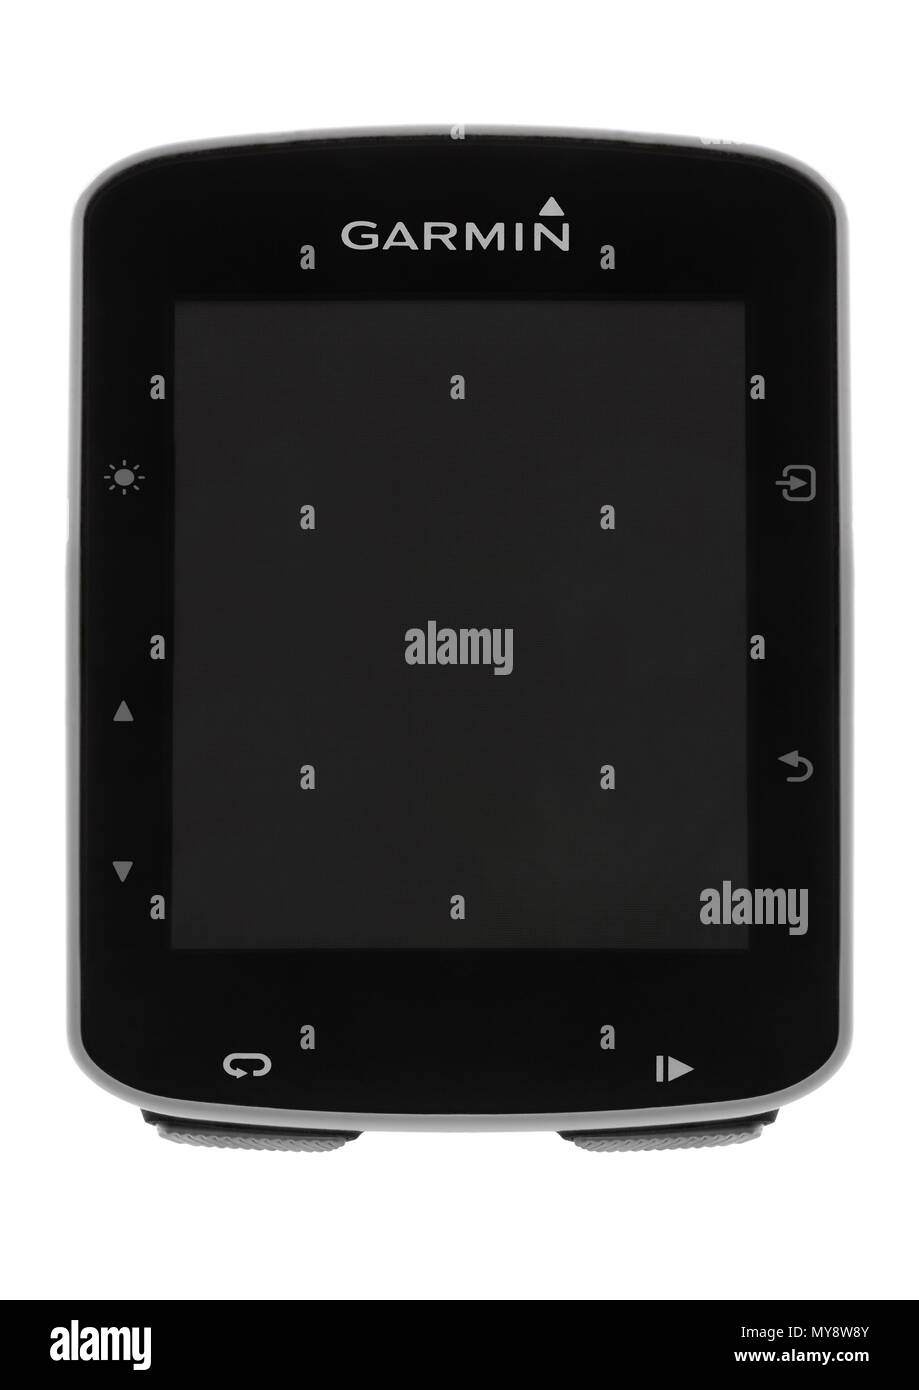 Garmin Edge 520 GPS cycle computer on white background Stock Photo - Alamy